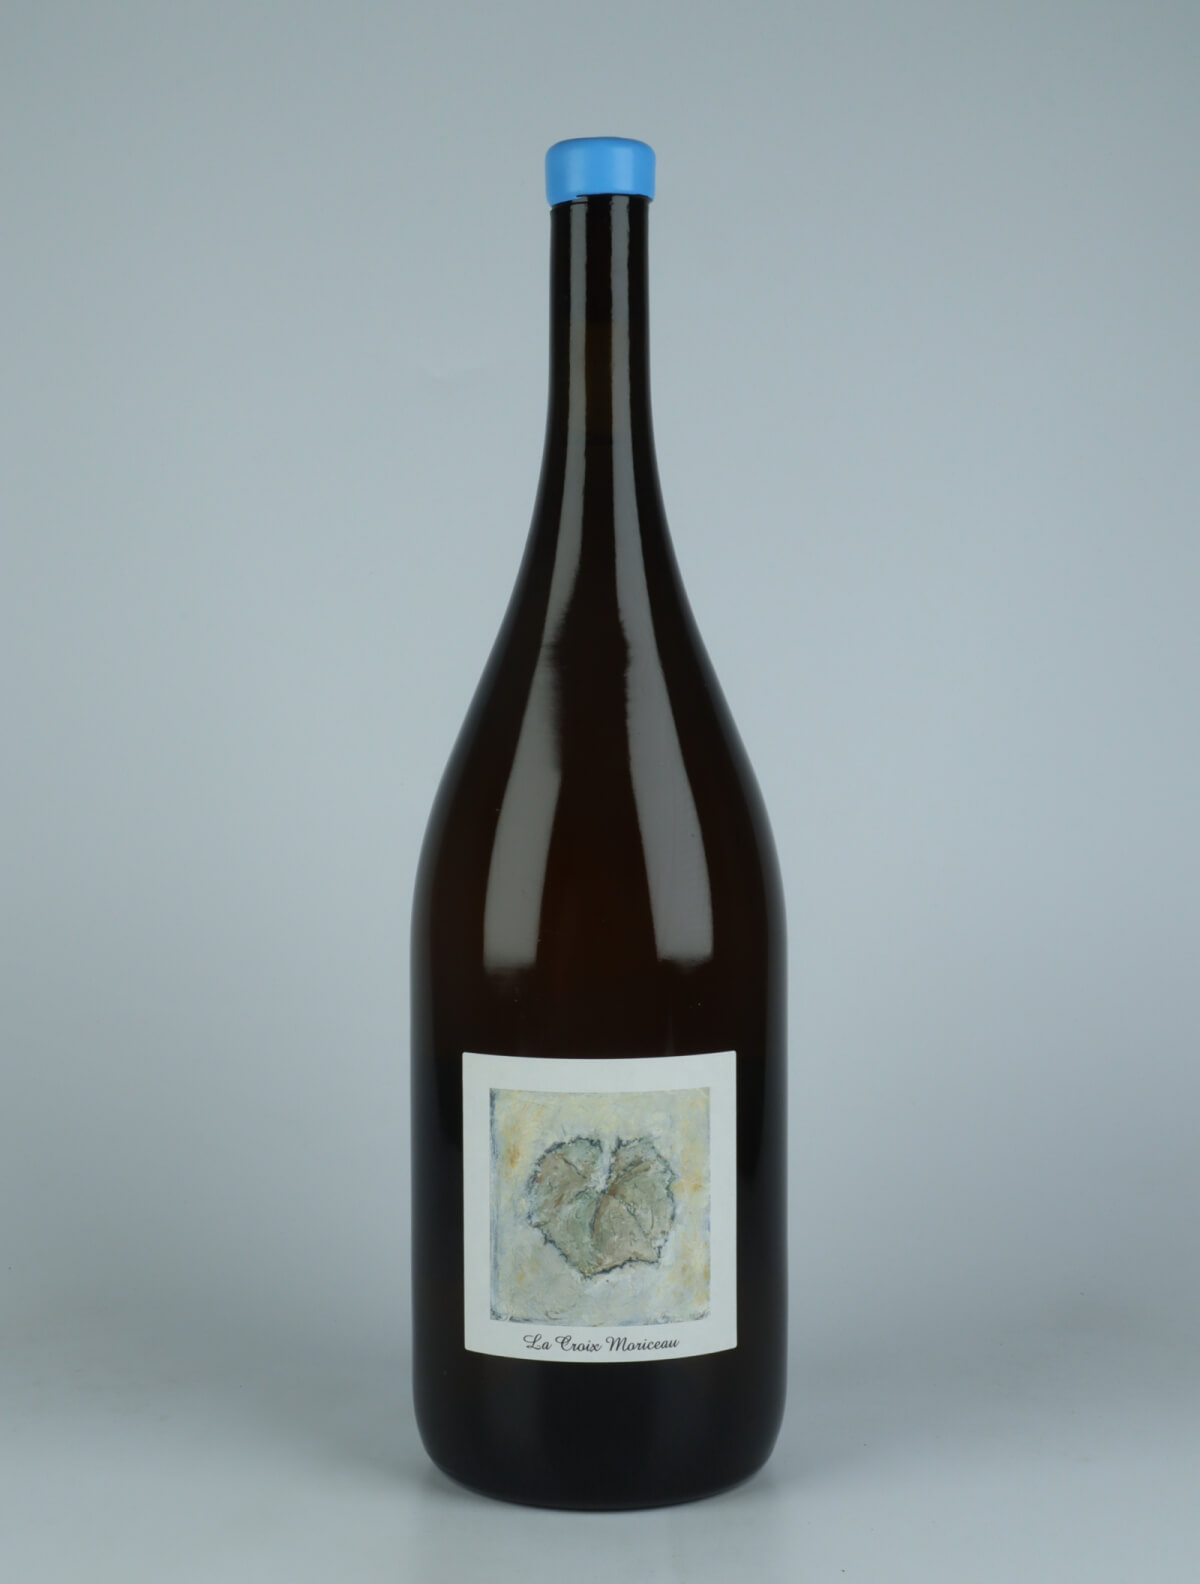 A bottle 2022 La Croix Moriceau - Magnum White wine from Complémen'terre, Loire in France